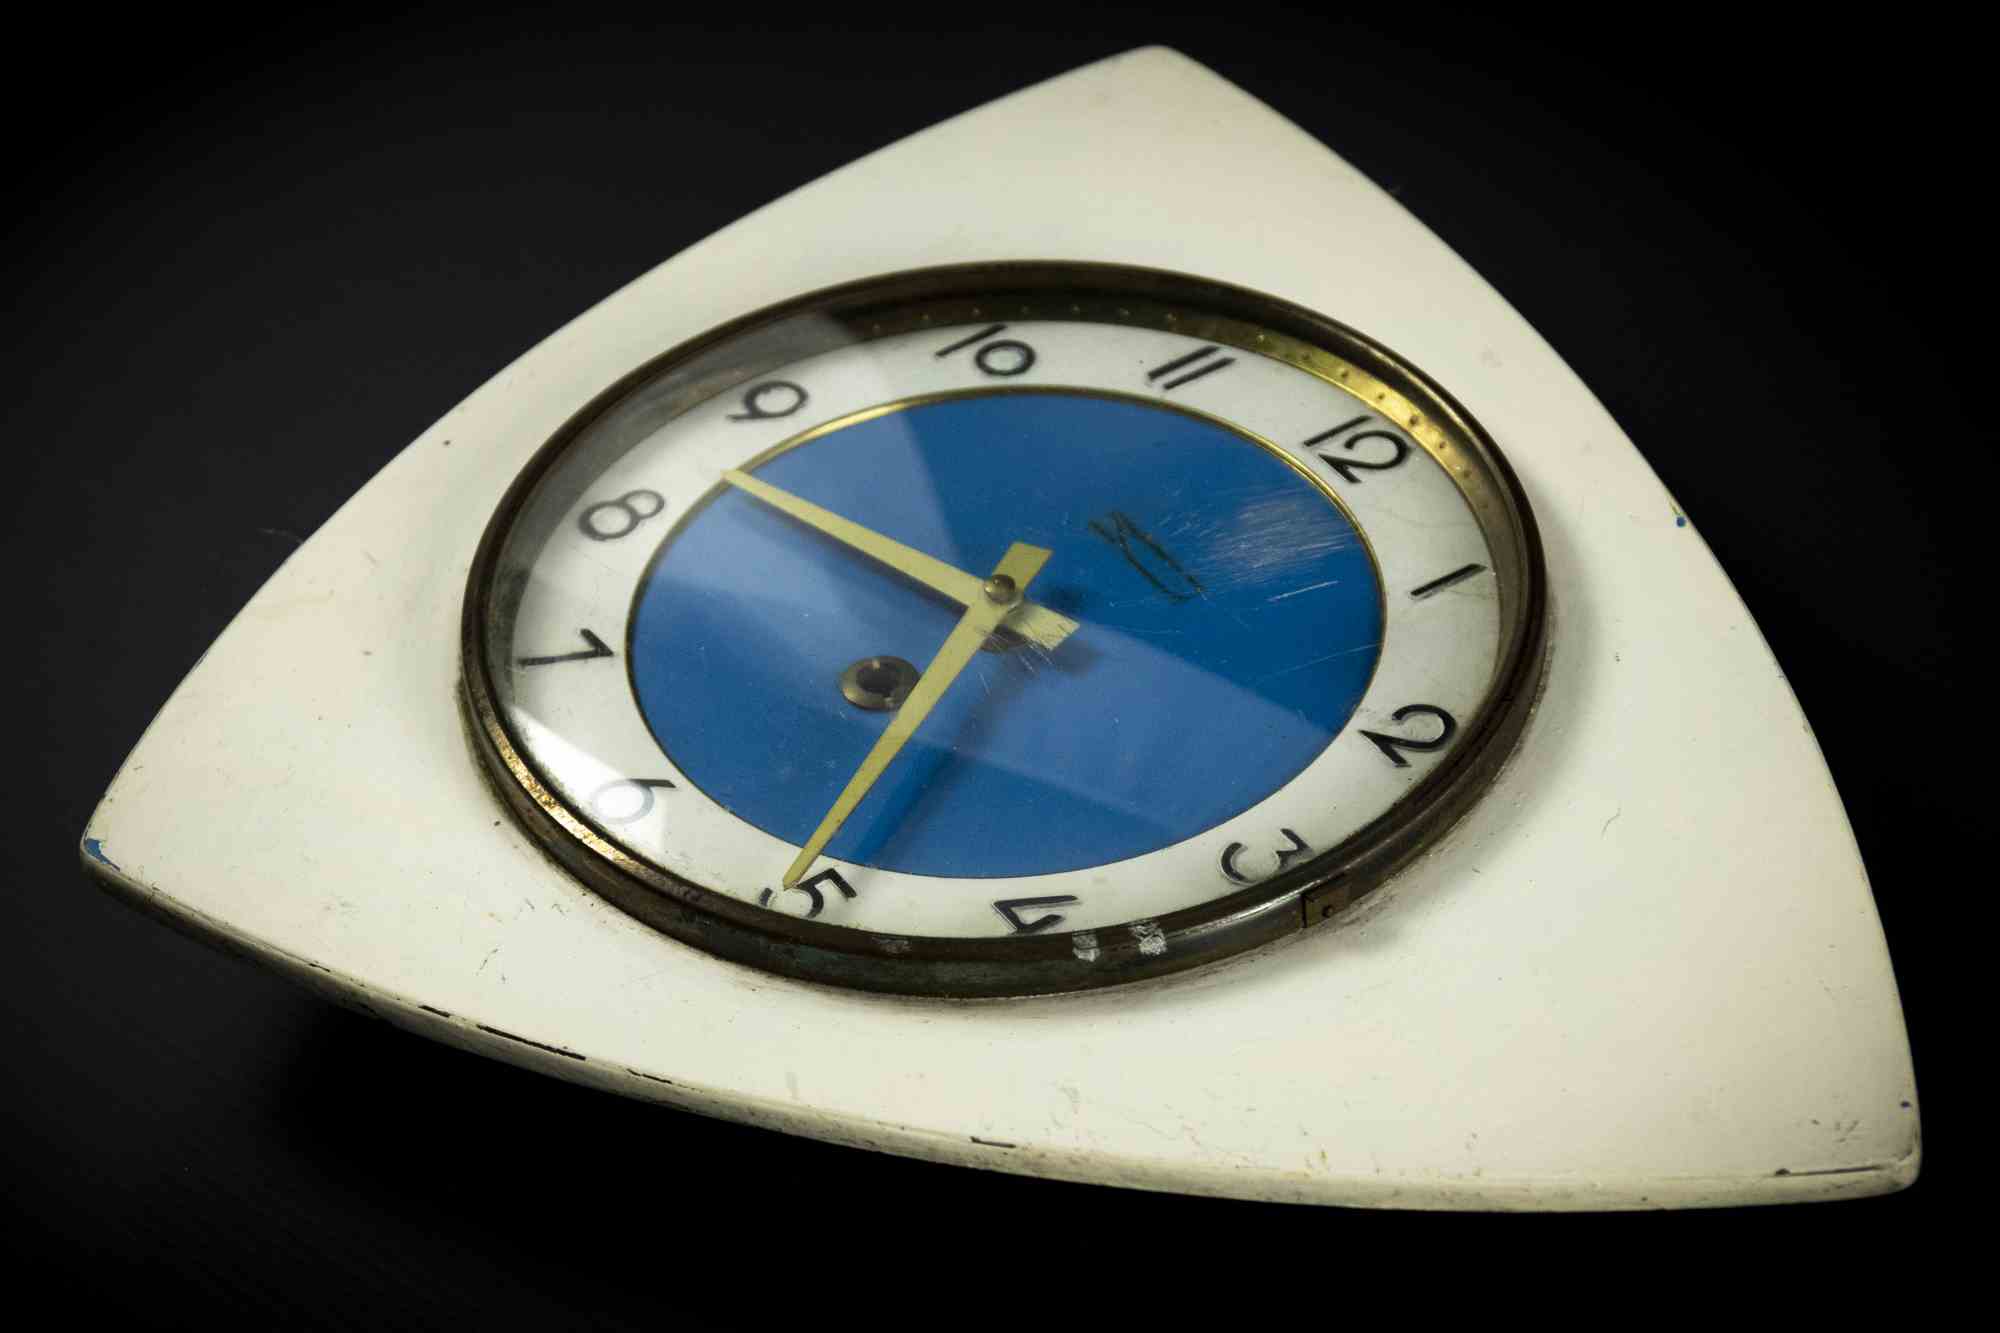 Vintage Clock est un objet de décoration réalisé dans les années 1970.

Une horloge vintage en plastique.

Le cadeau idéal pour un saut dans le passé.

Pas en parfait état en raison de l'époque.